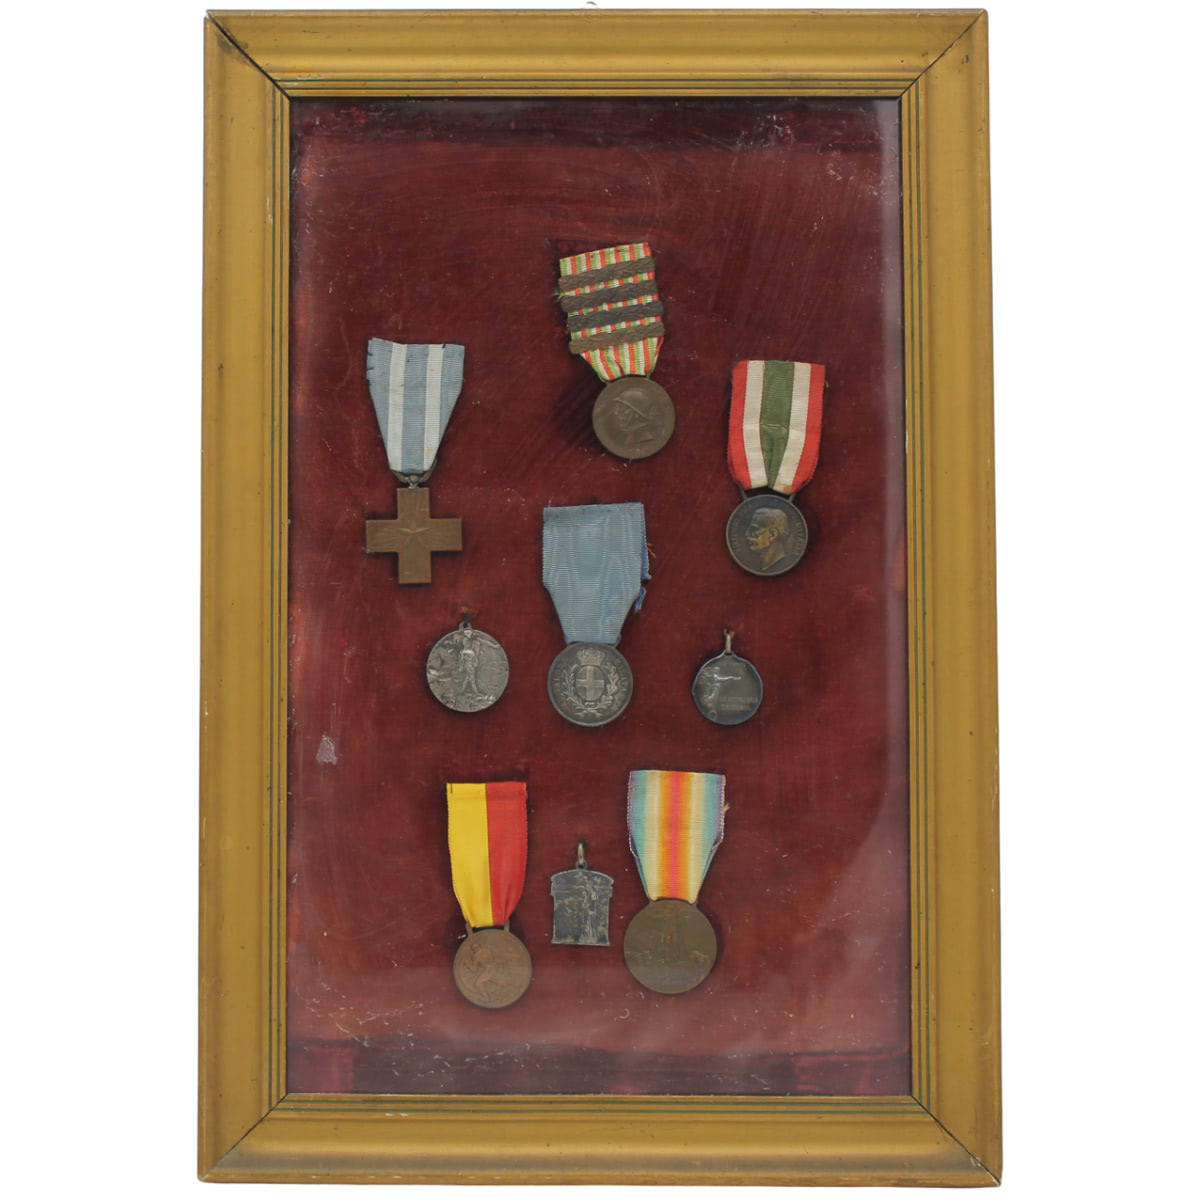 Lotto medaglie I guerra mondiale - Lot of World War I medals